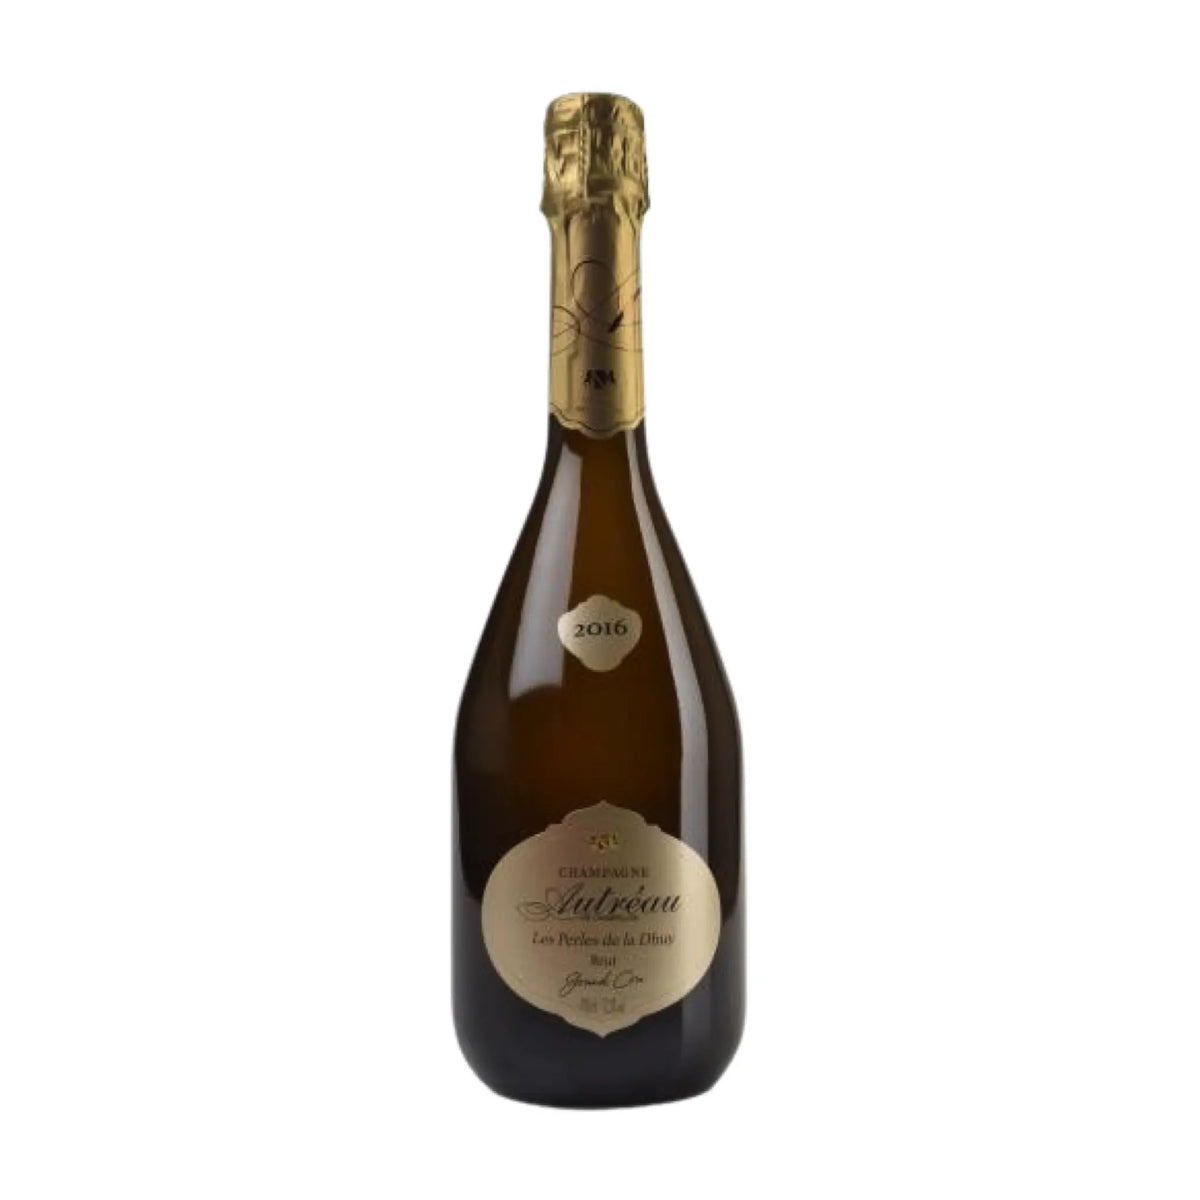 Champagne Autreau-Champagner-Chardonnay, Pinot Noir-2016 Brut Perles de la Dhuy Grand Cru Millisemé-WINECOM